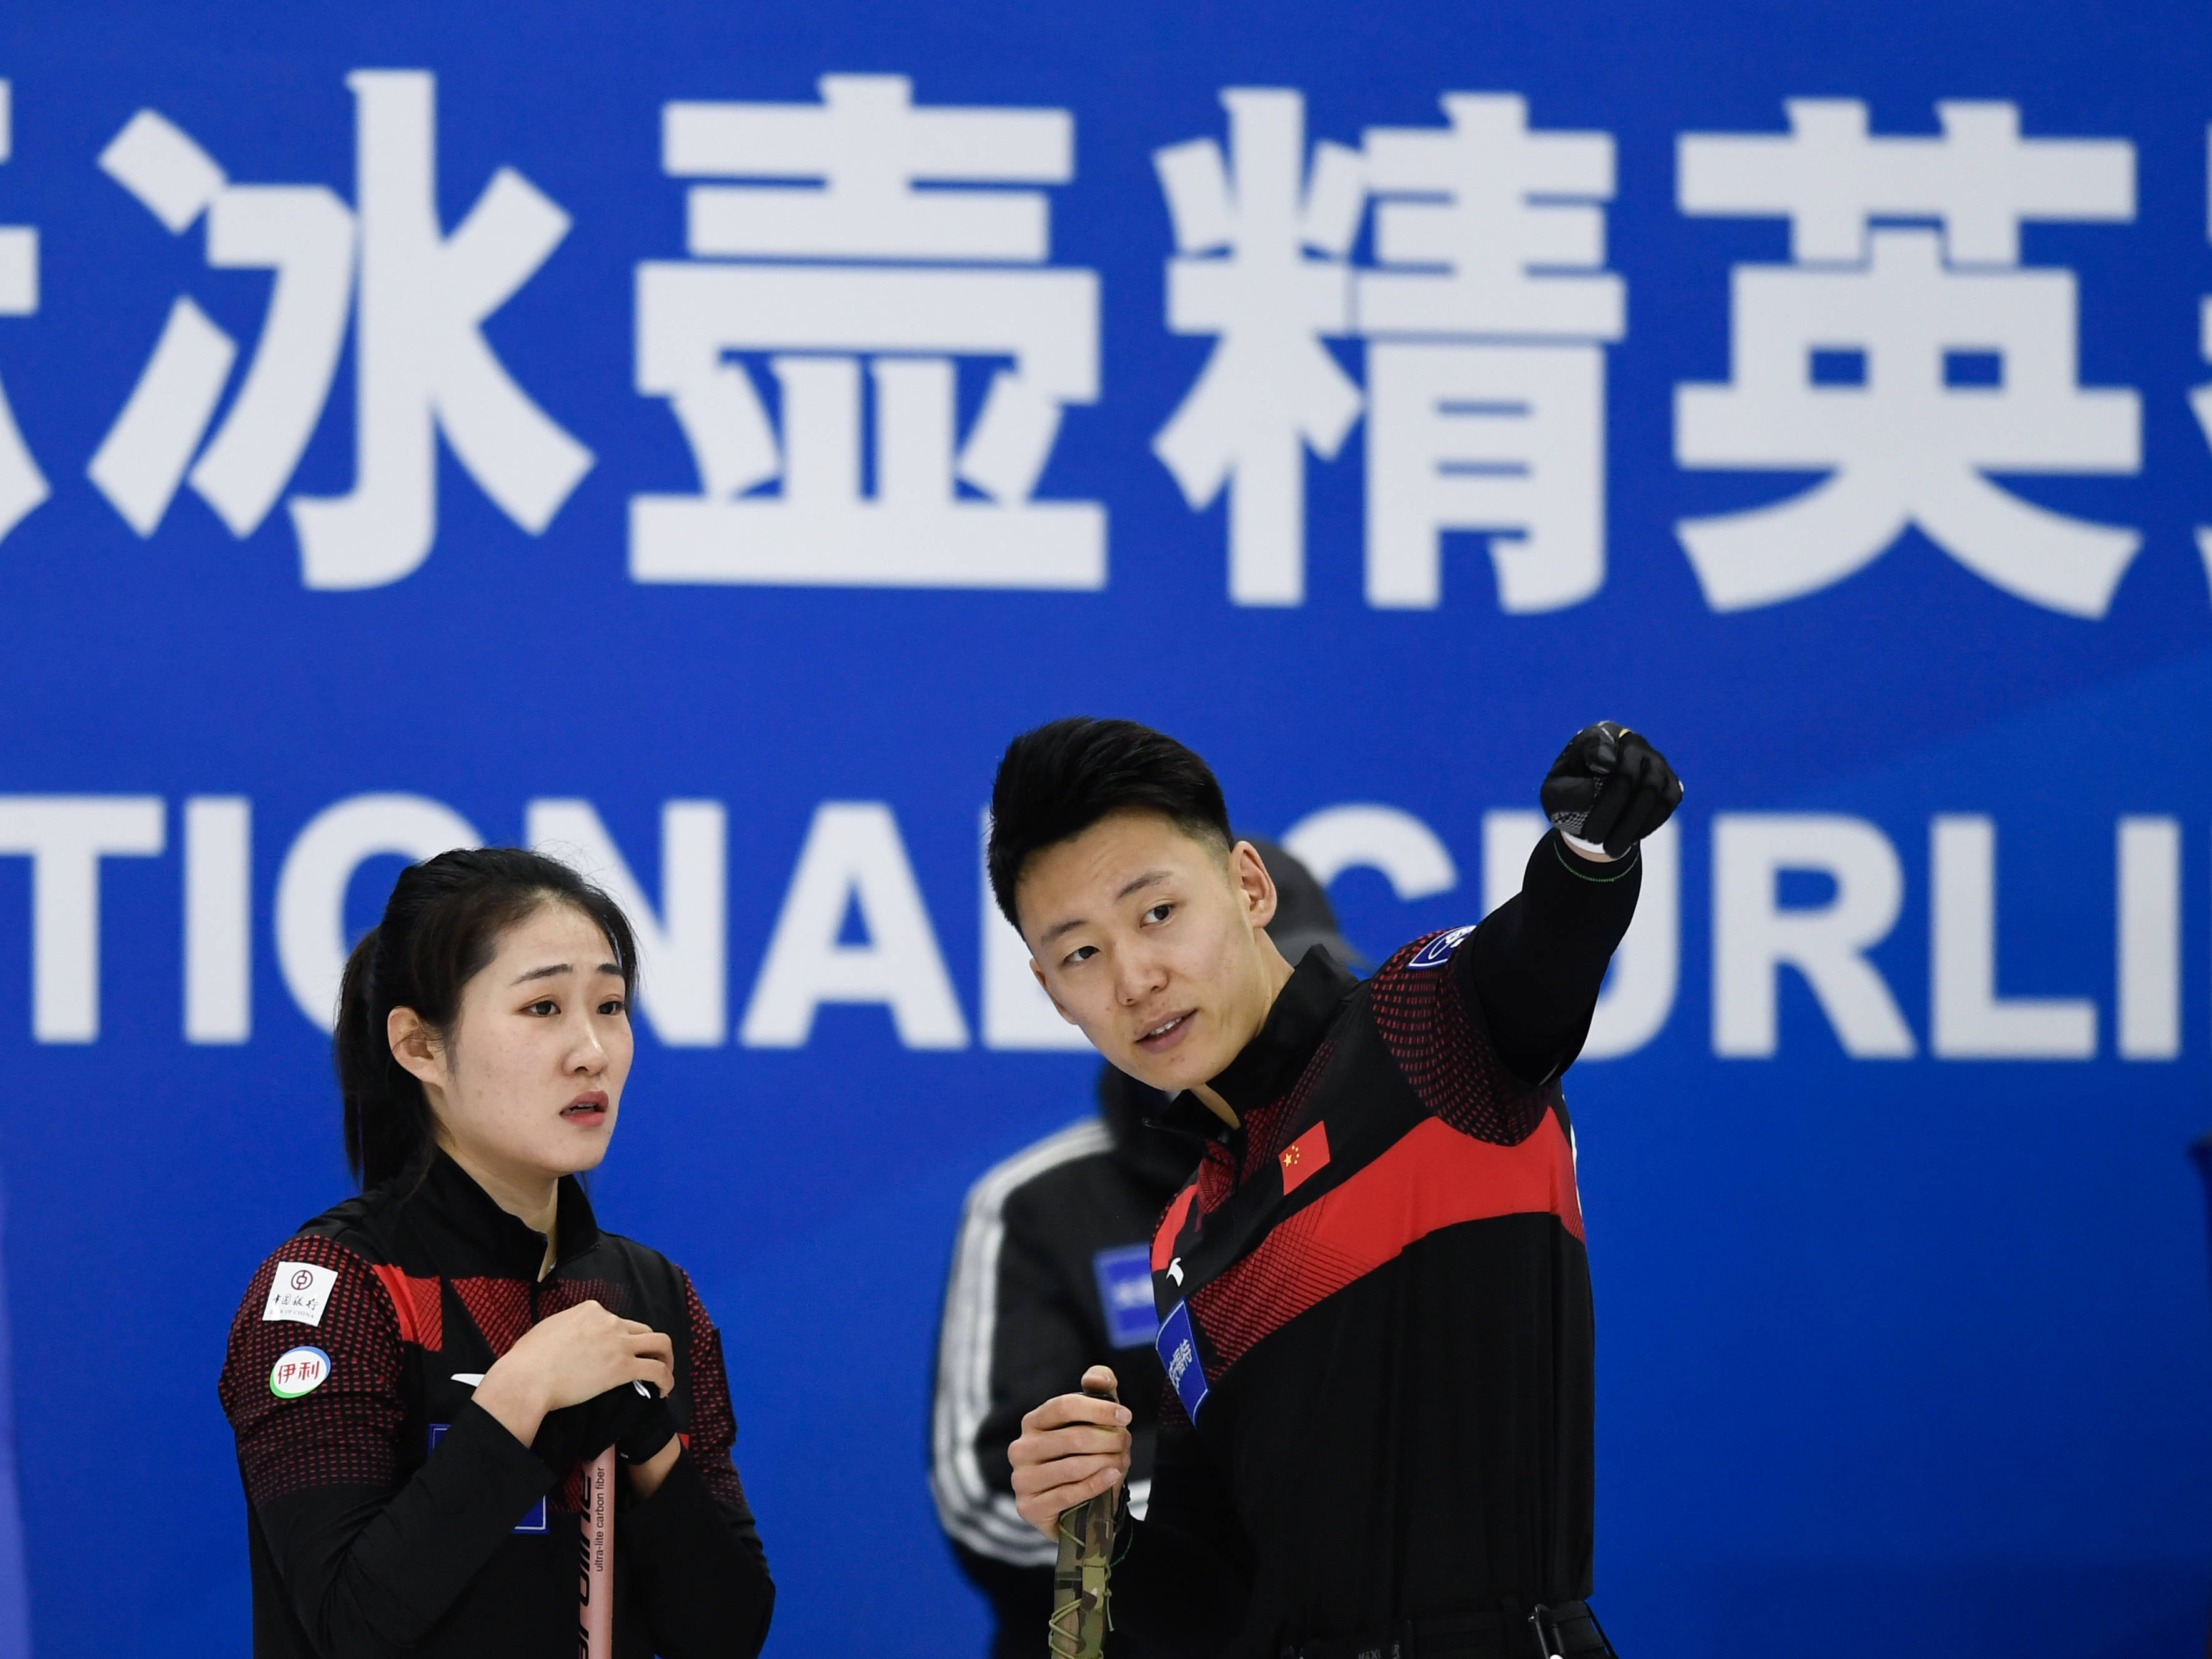 中国国家冰壶队图片